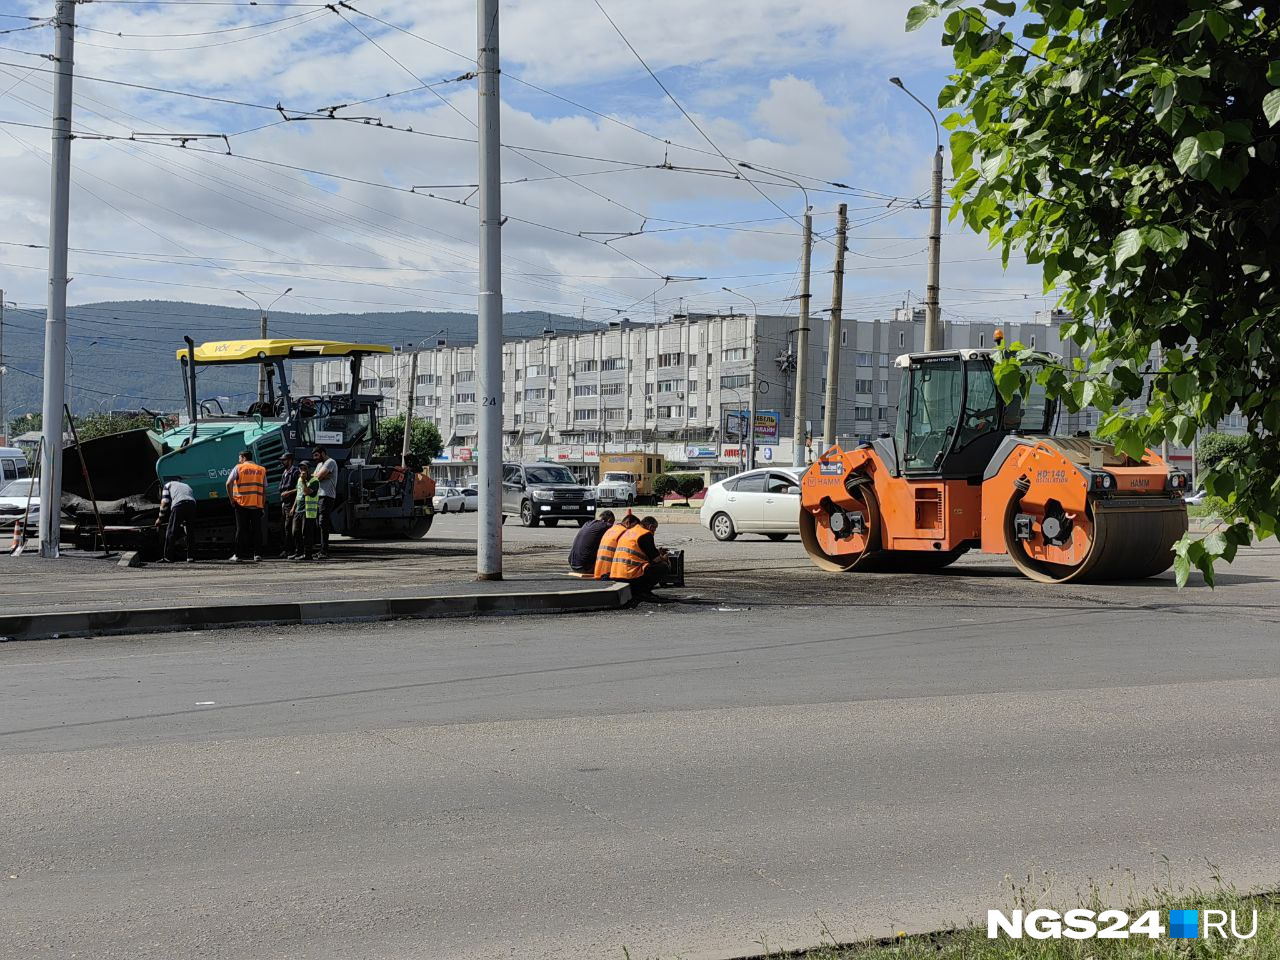 Пробка парализовала Предмостную площадь в Красноярске. Что там происходит